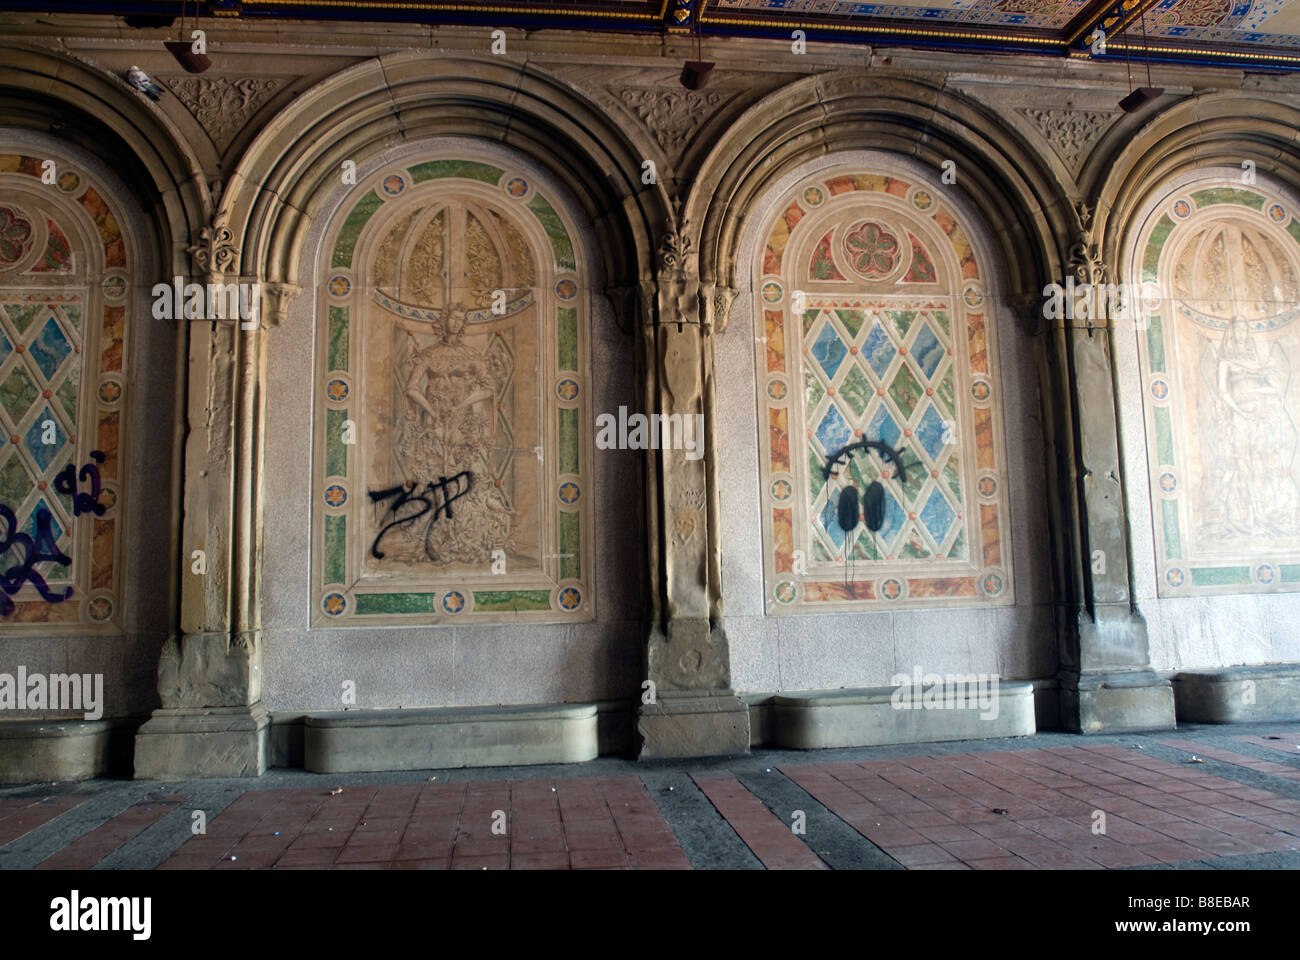 Der Central Park Bethesda Terrasse Arcade mit restaurierten Decken und Wände mit Graffiti Vandalismus Stockfoto